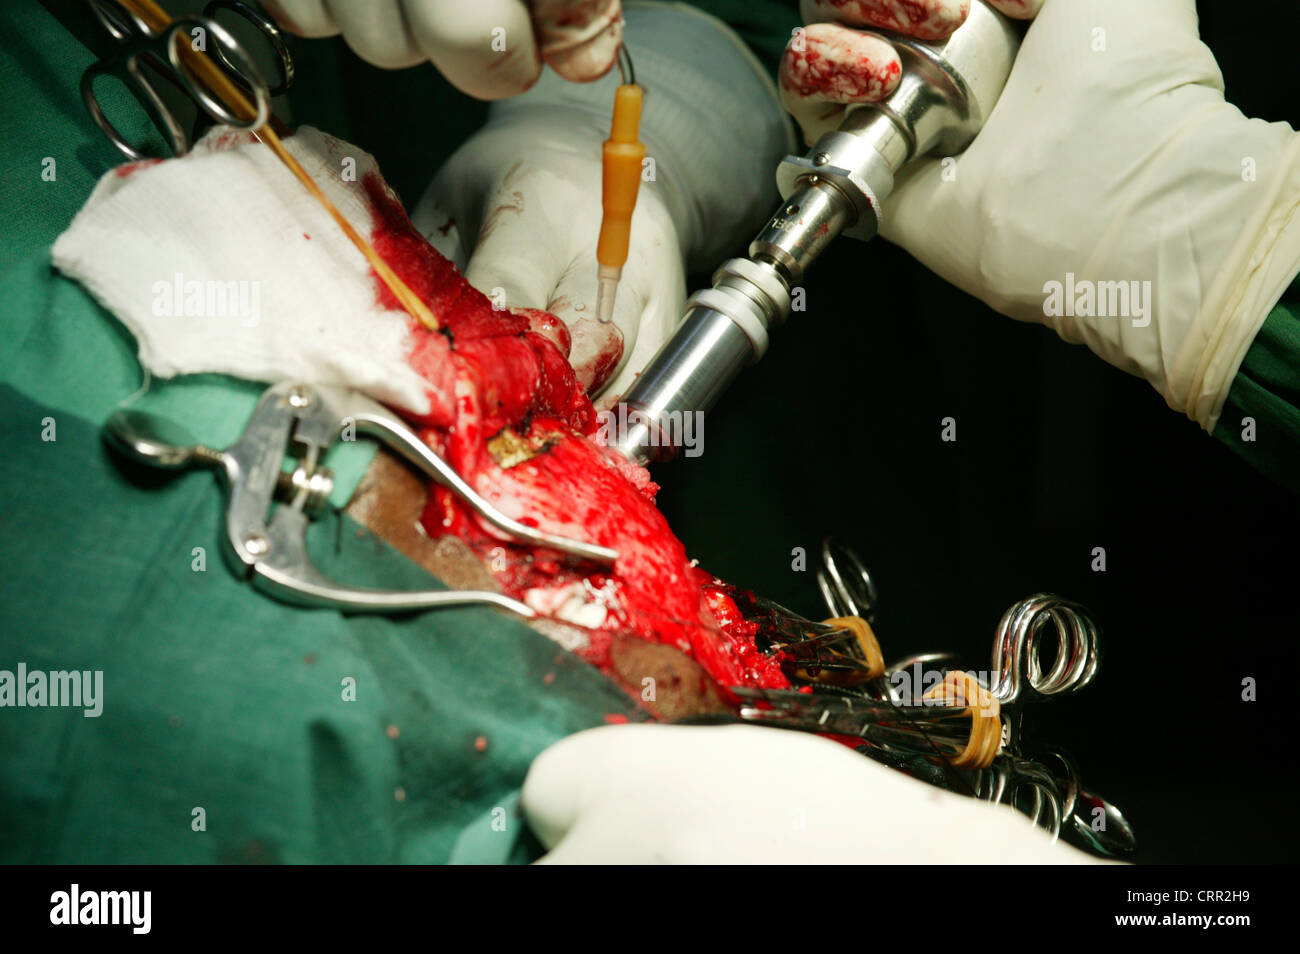 Ein High-Speed-Drill wird verwendet, um durch den Schädel, so dass der Chirurg das Gehirn während der Neurochirurgie Zugang zu durchdringen. Stockfoto